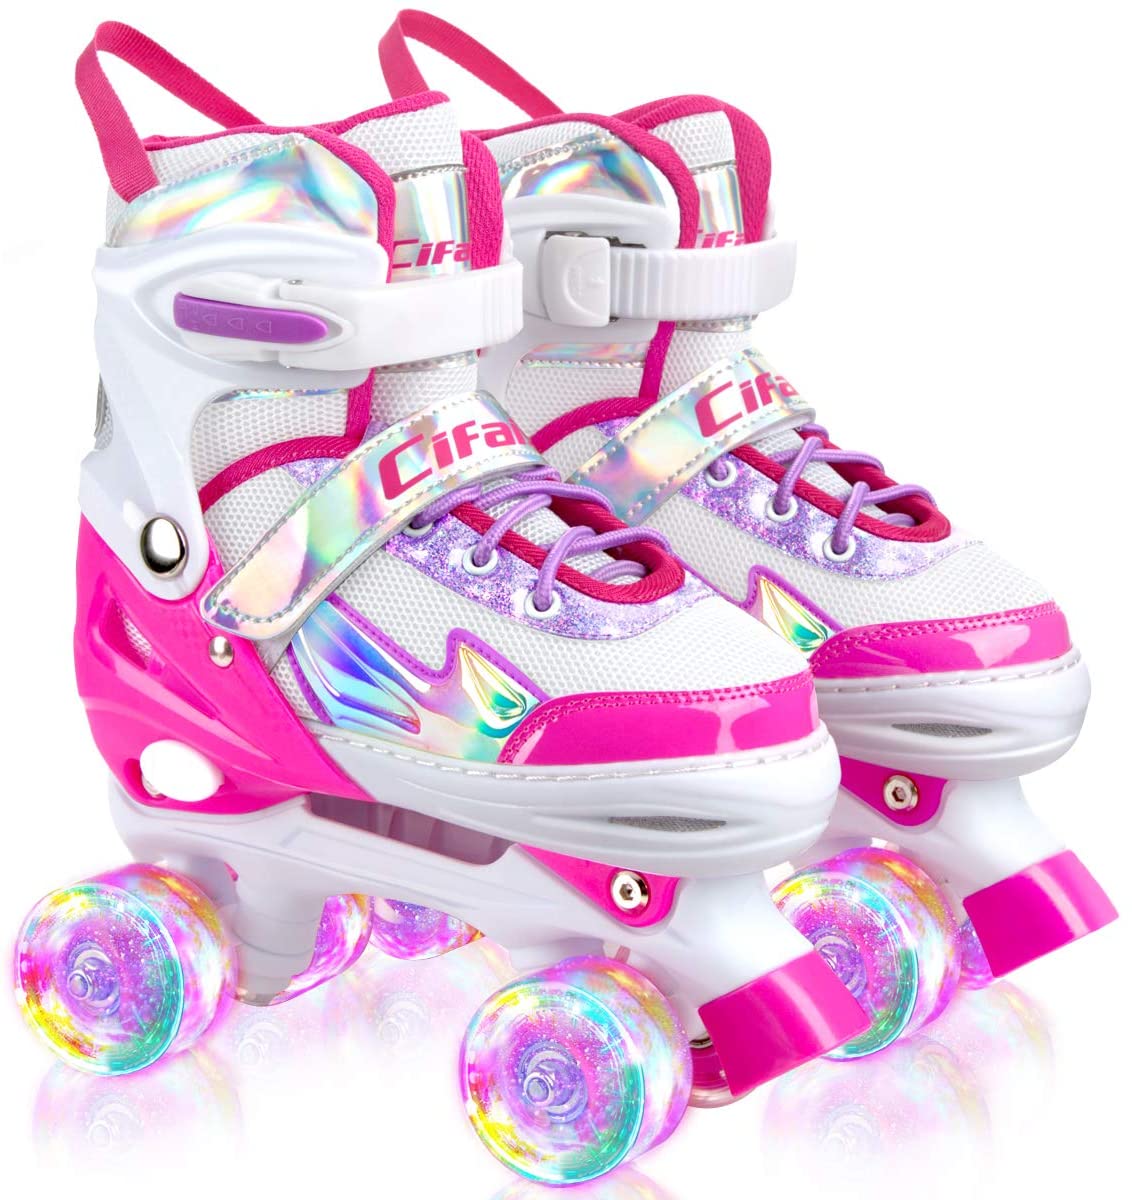 Rollerskates Made for Kids Great for Beginners High Top Sneaker Style Indoor Pixie Little Princess Kids Quad Roller Skate Outdoor Childrens Skate Lenexa Roller Skates for Girls